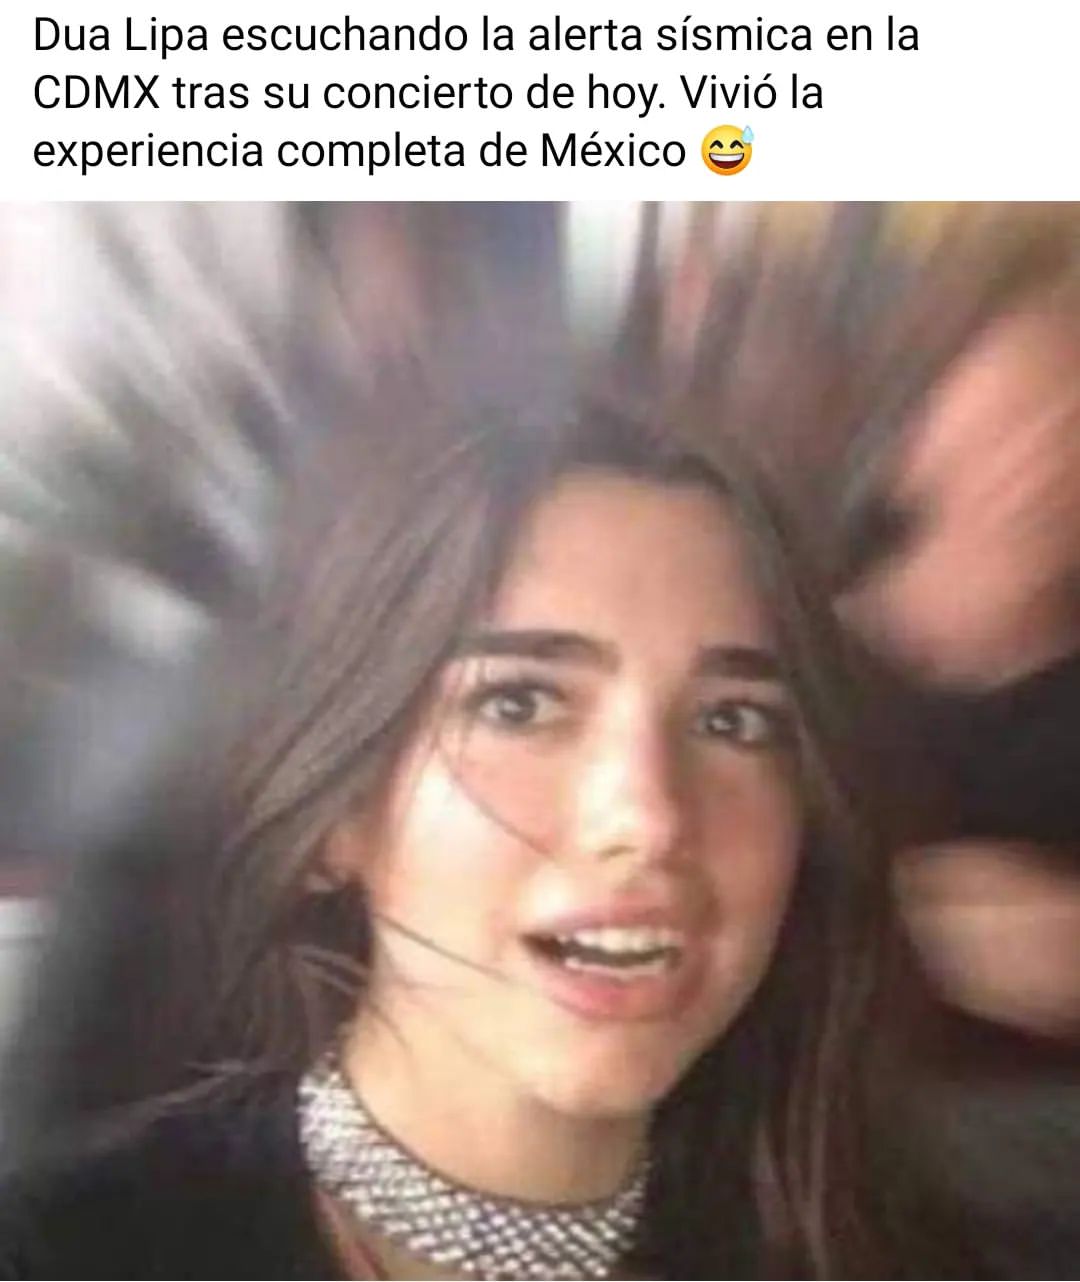 Dua Lipa escuchando la alerta sísmica en la CDMX tras su concierto de hoy. Vivió la experiencia completa de México.